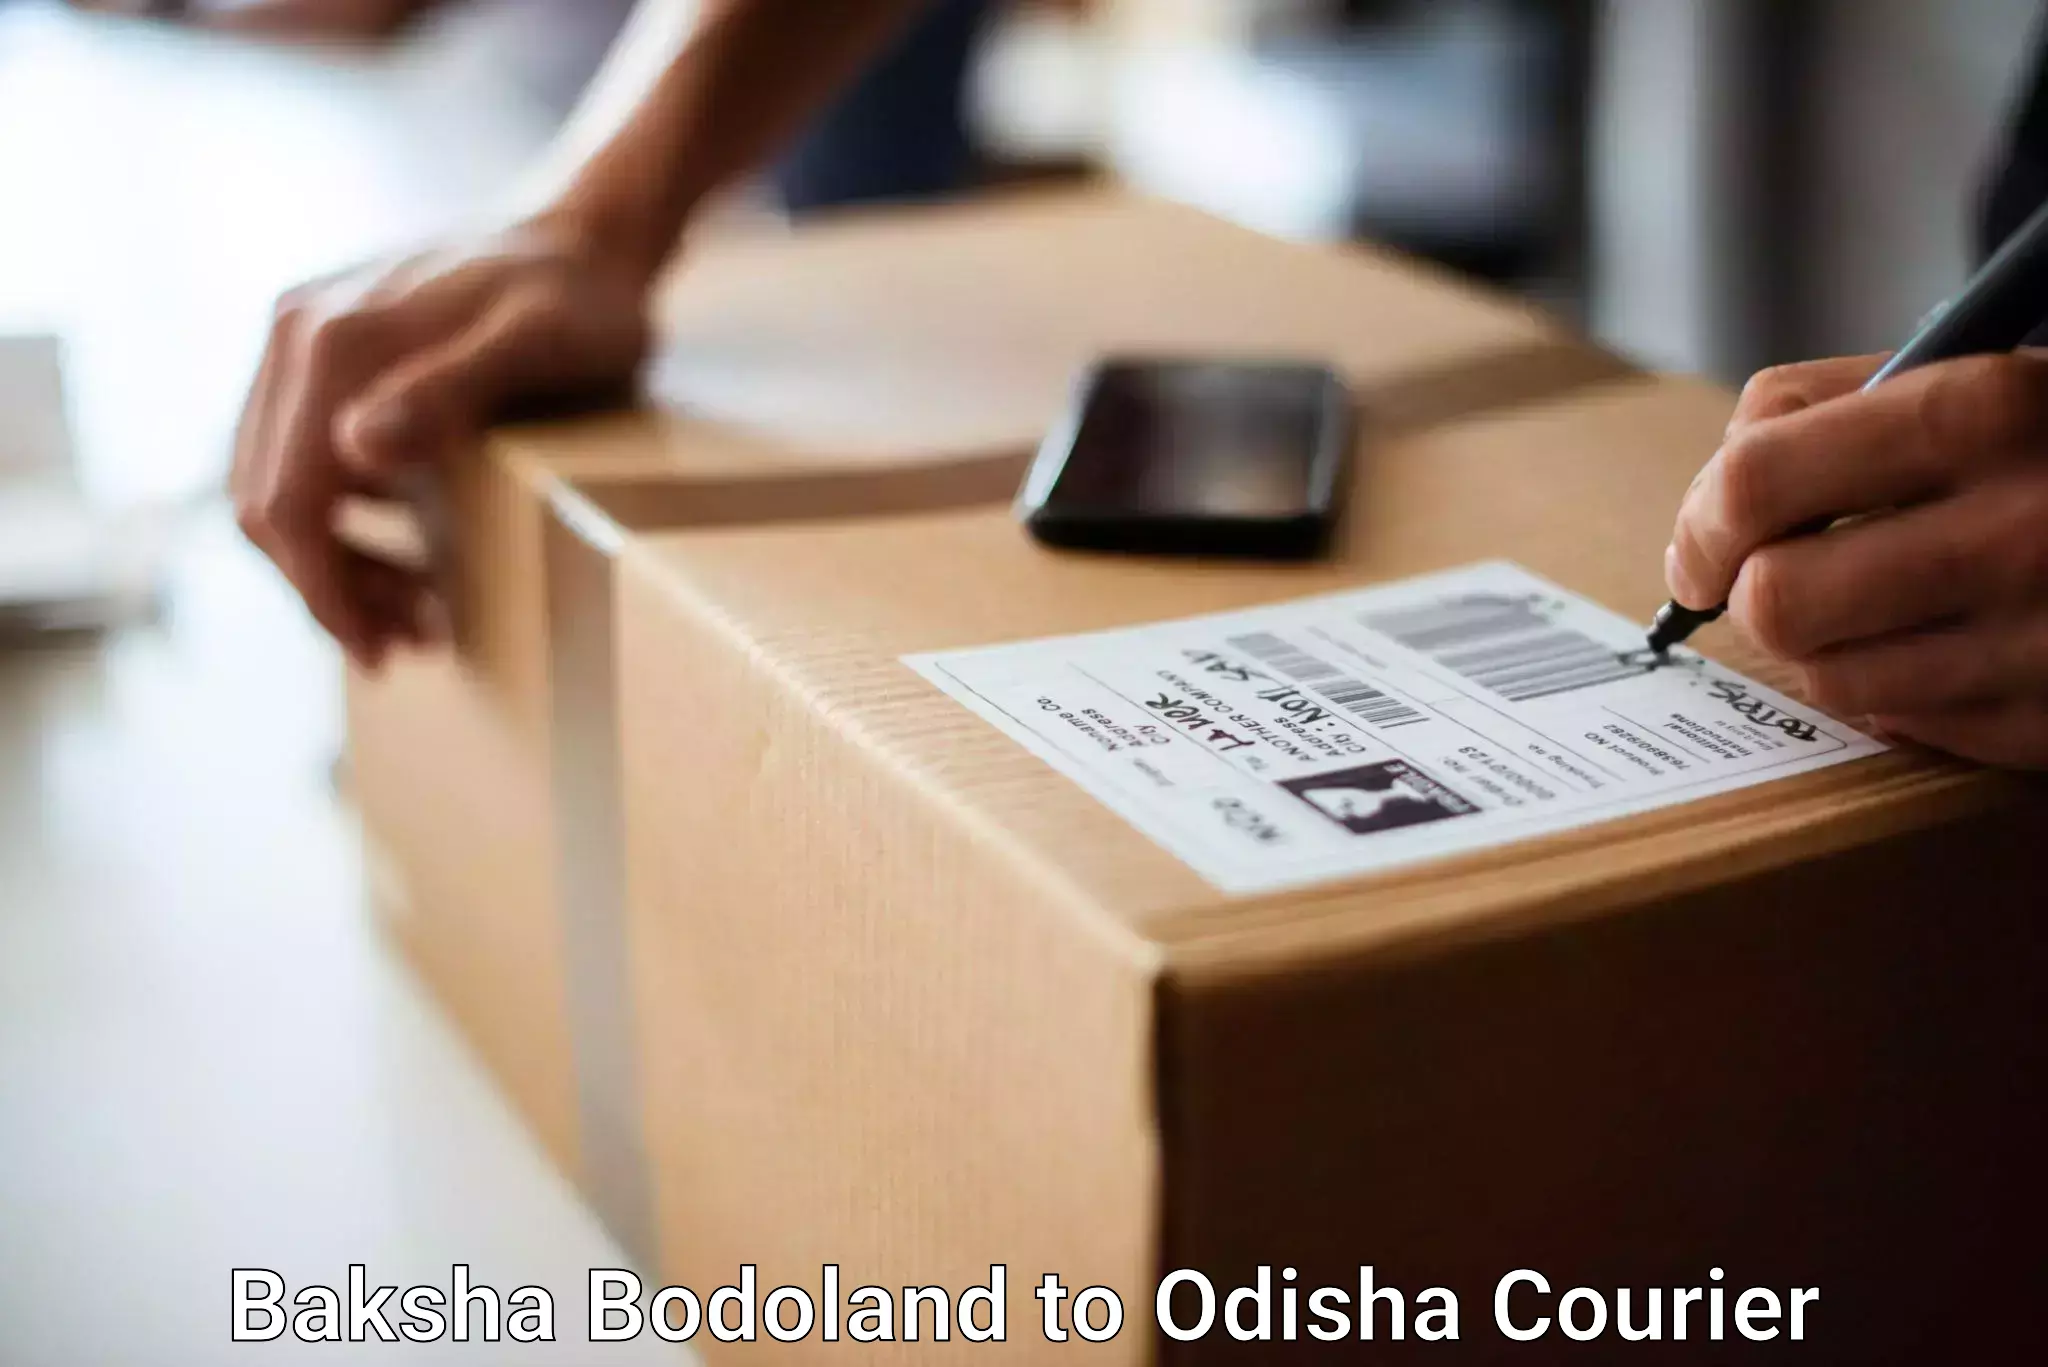 Emergency baggage service Baksha Bodoland to Phulbani